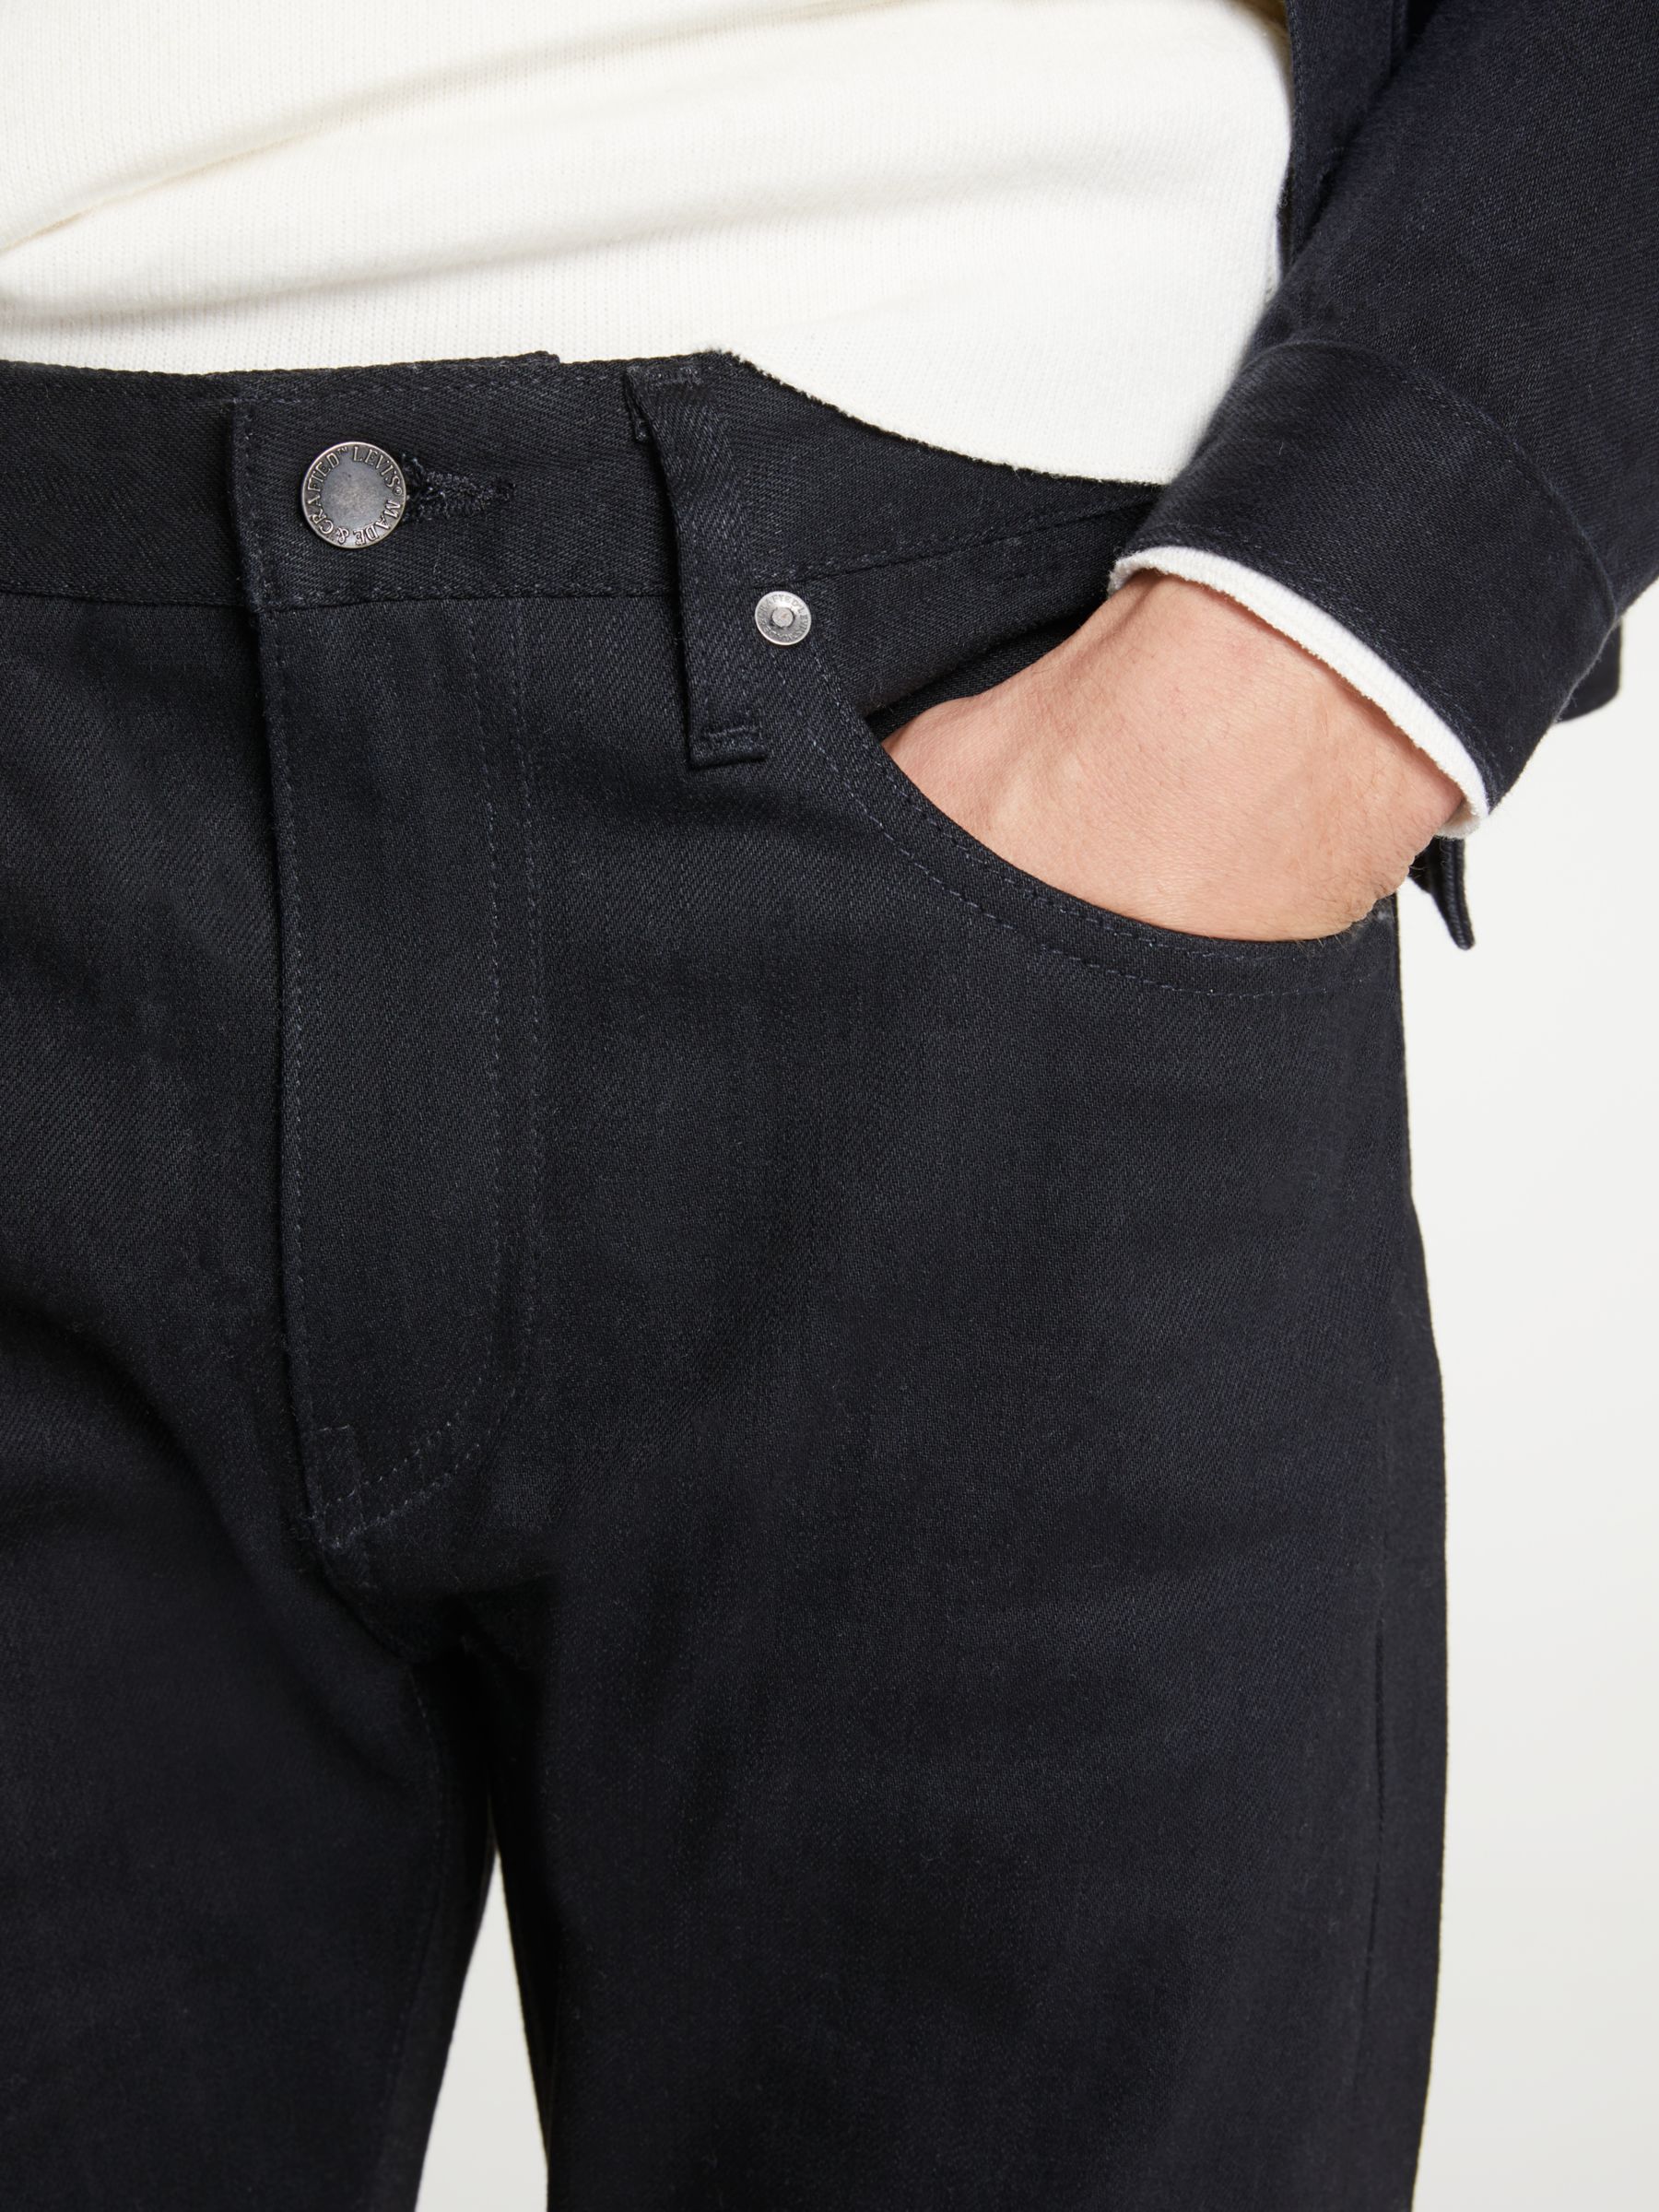 levis black selvedge jeans